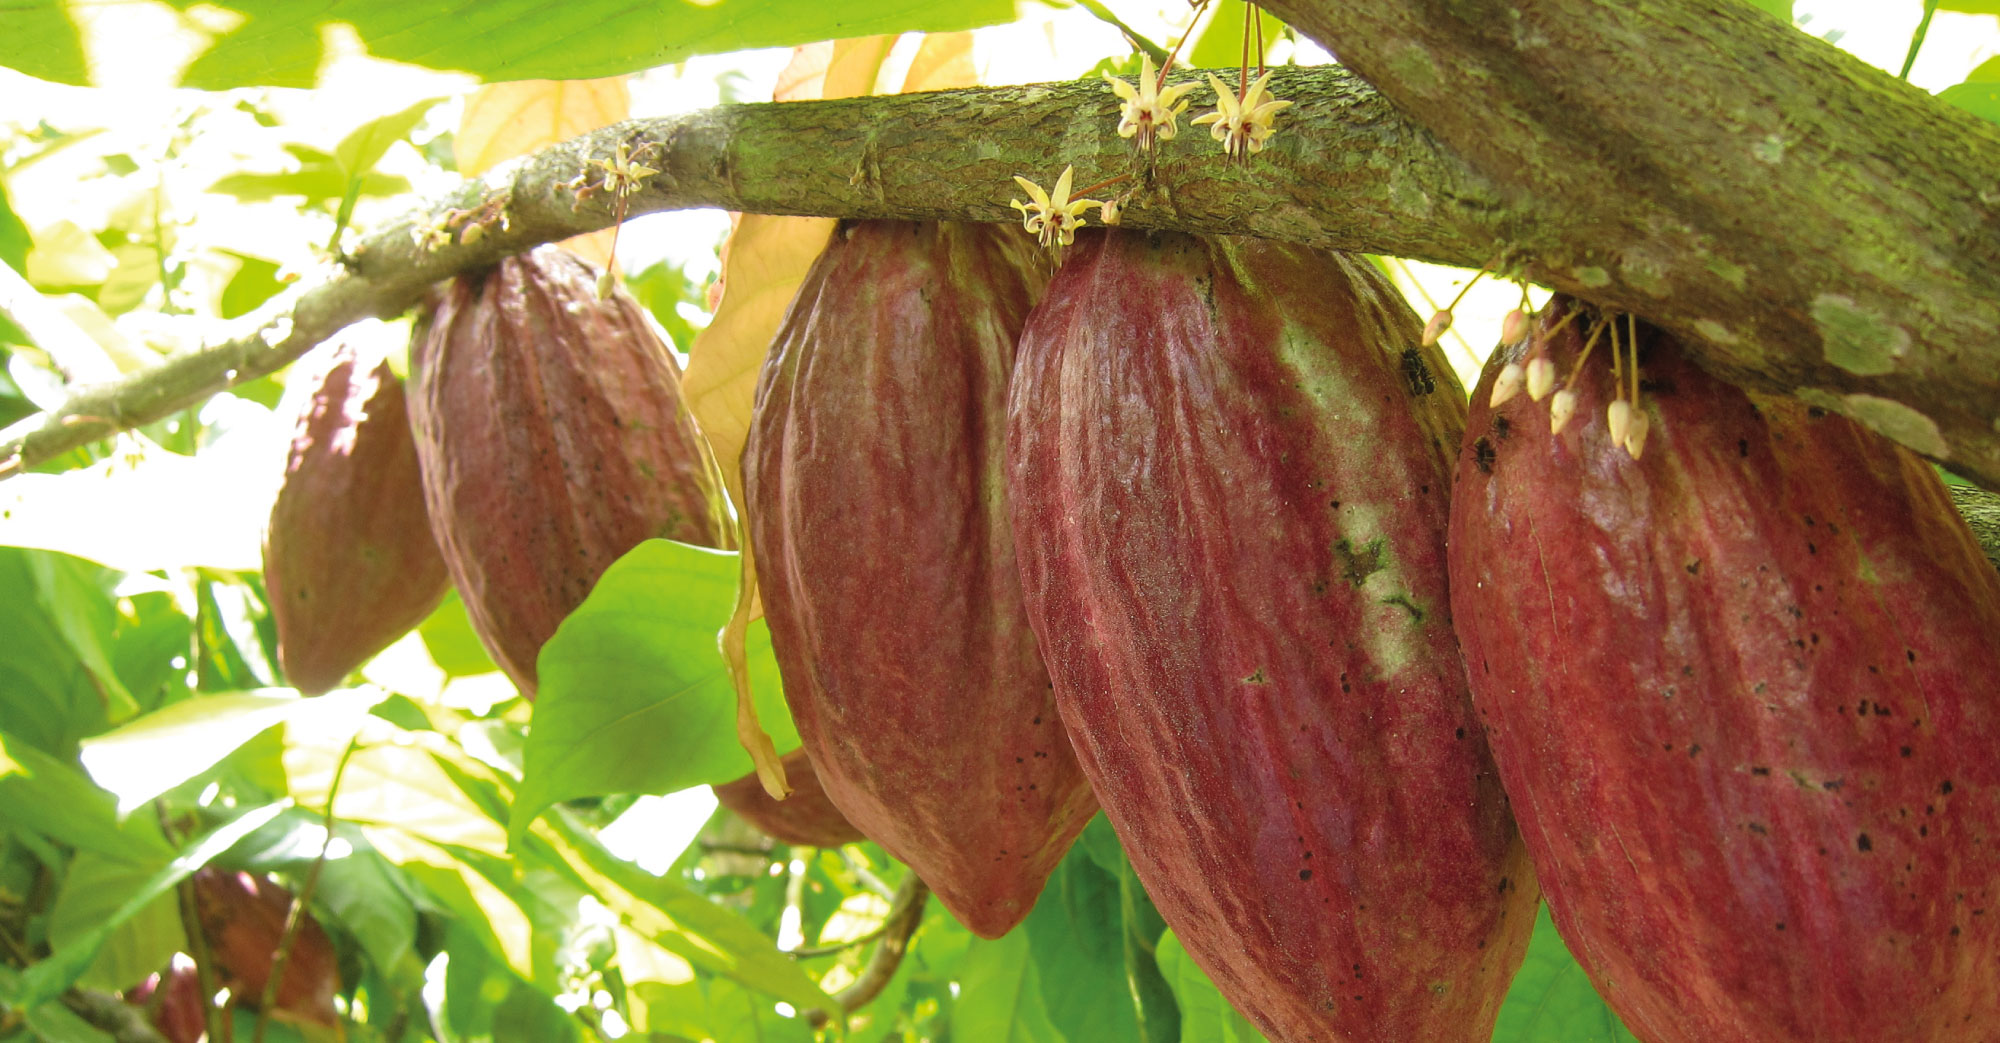 Se inicia piloto jurisdiccional para promover el cacao y otros cultivos libre de deforestación en Tocache, San Martín